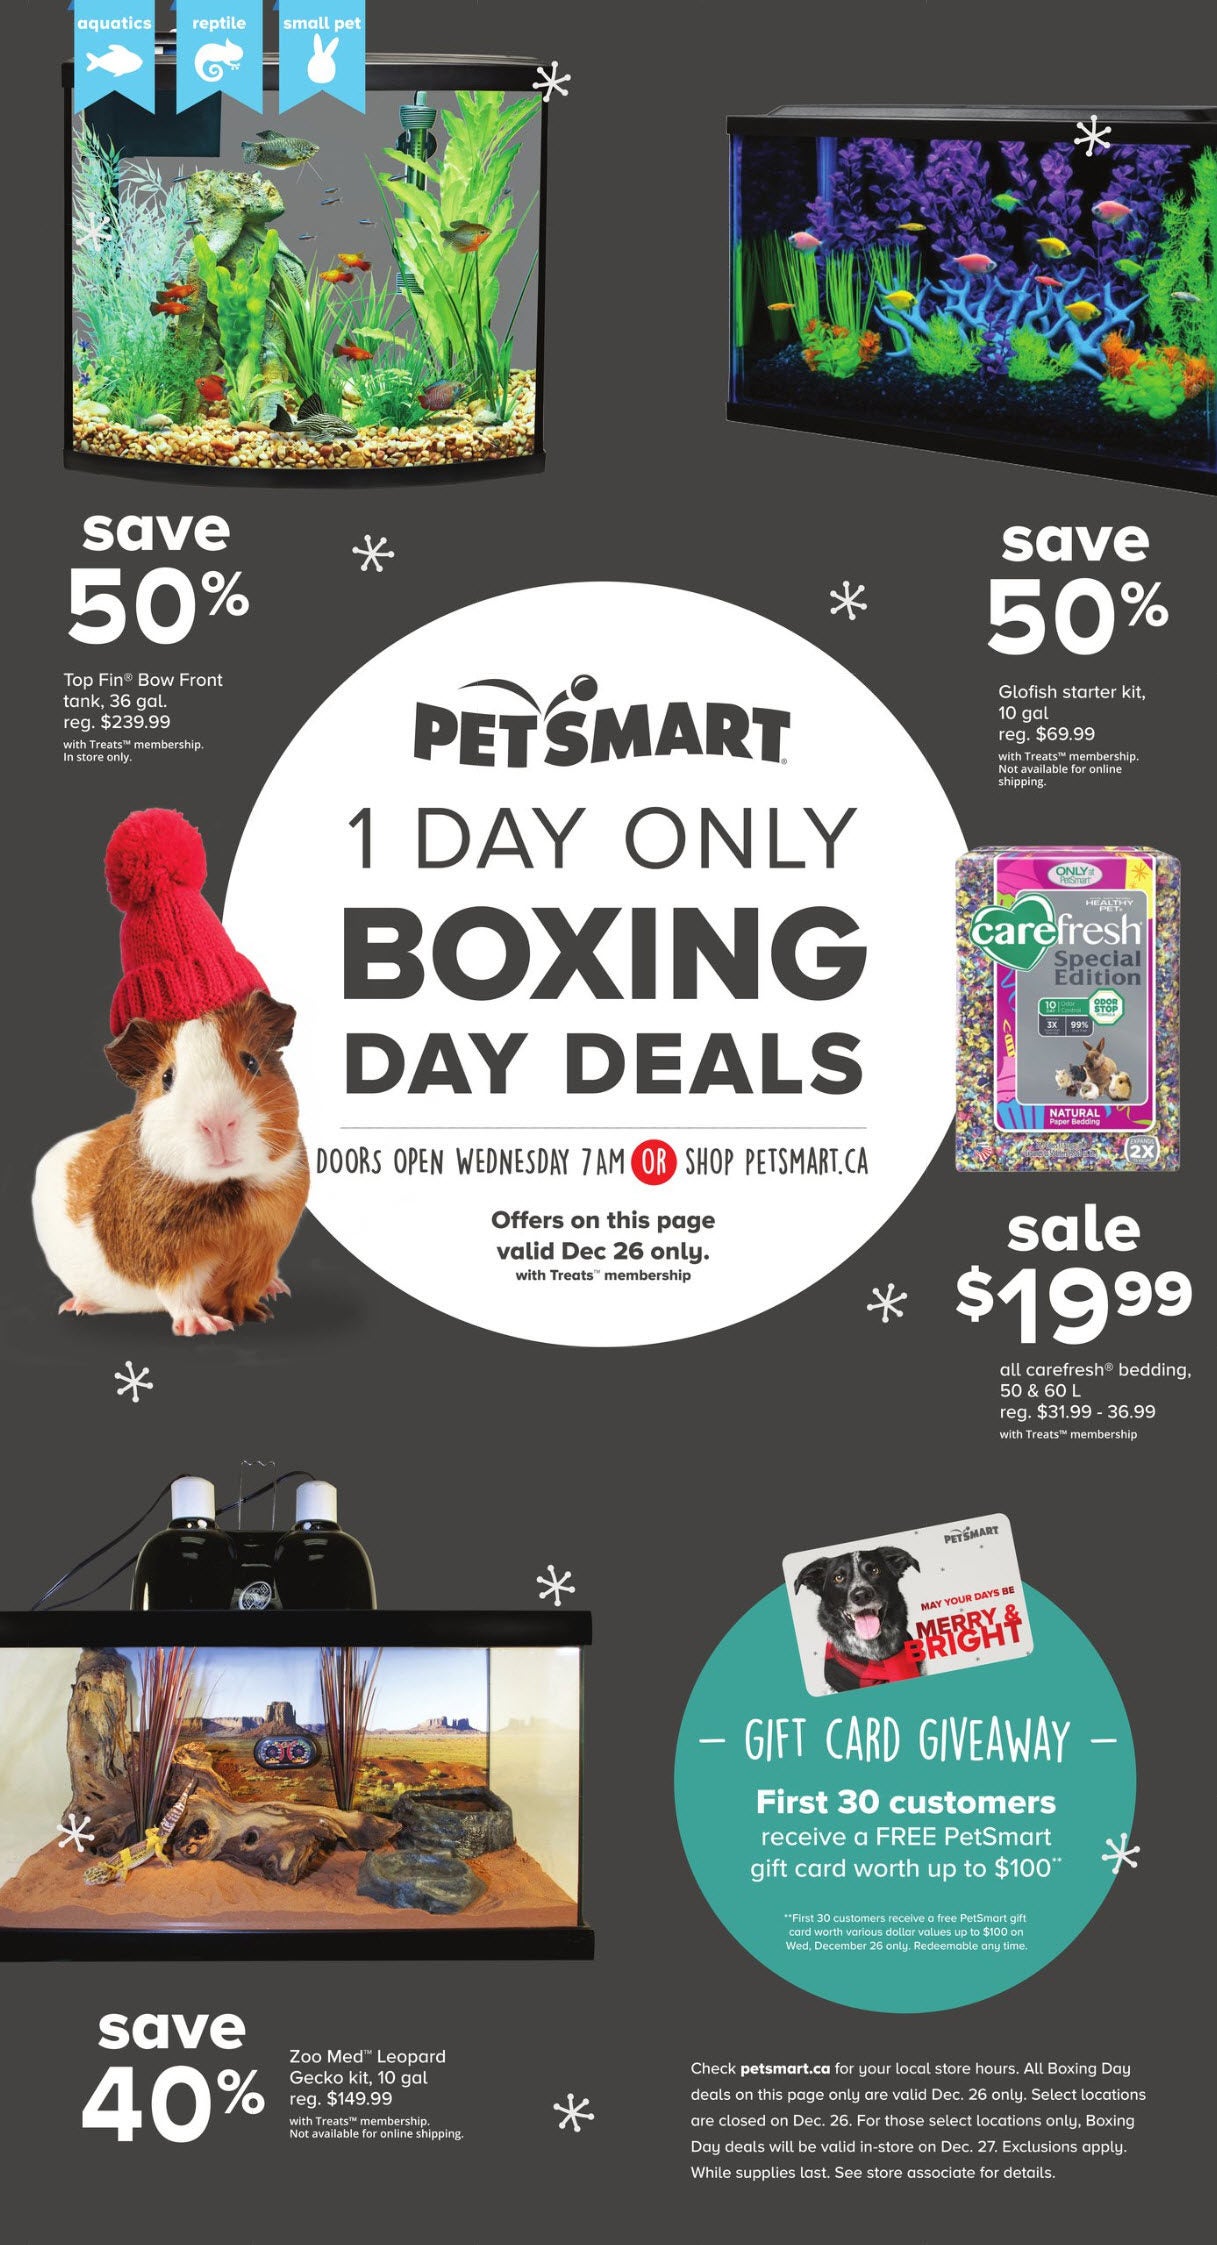 Petsmart Weekly Flyer Treats Membership Only Boxing Day Deals Dec 26 Redflagdeals Com